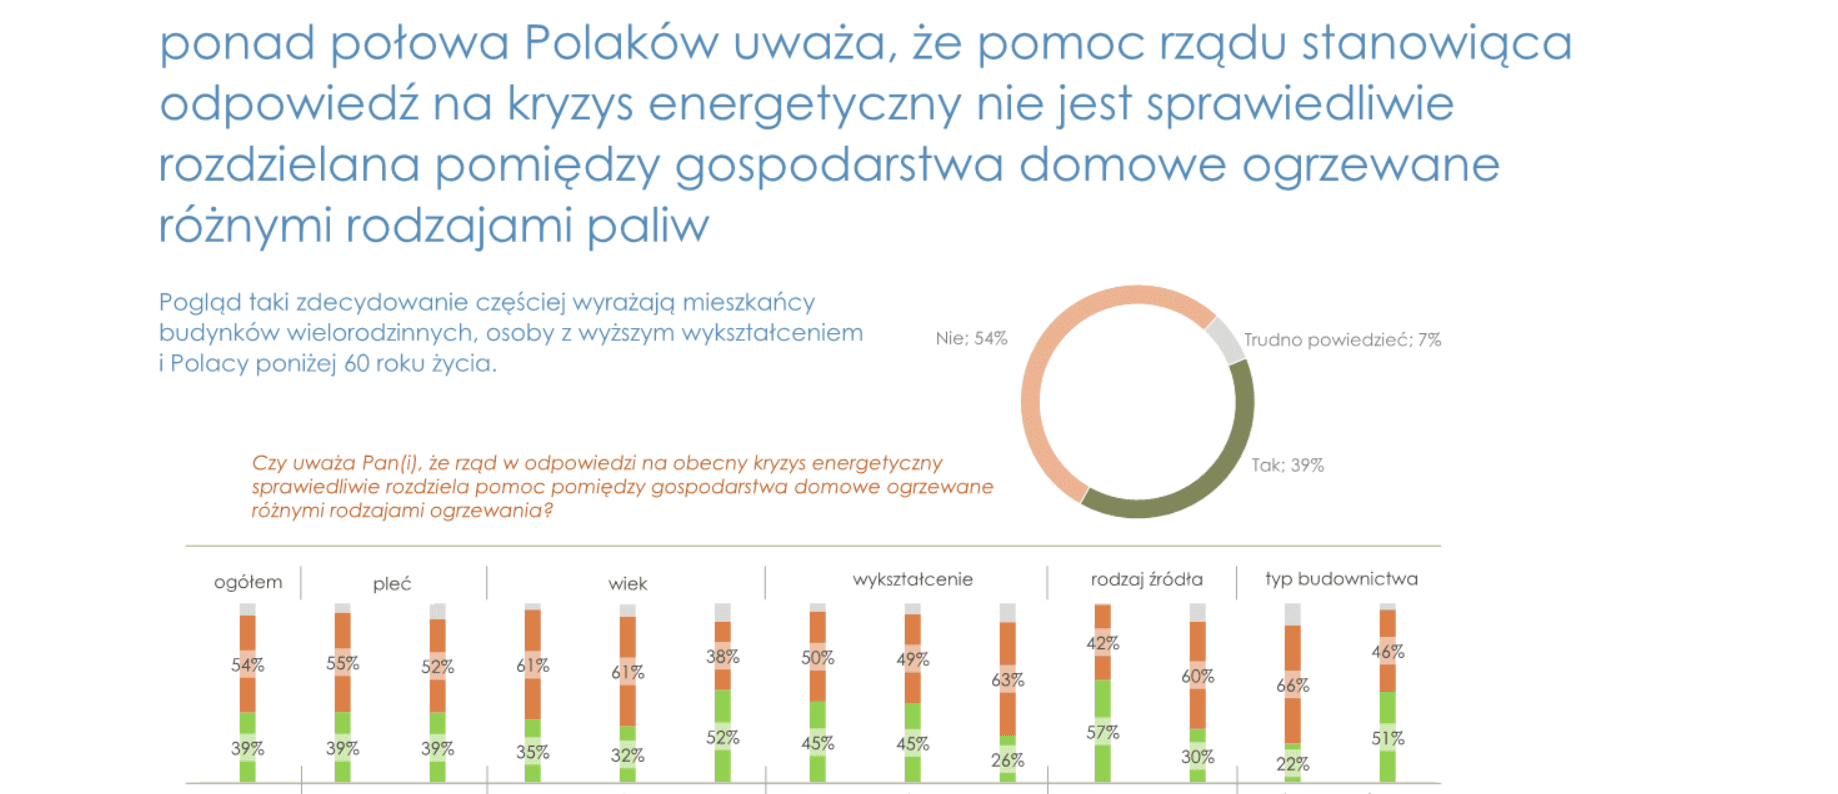 Polacy krytycznie o reakcji rządu na kryzys energetyczny – badanie opinii publicznej